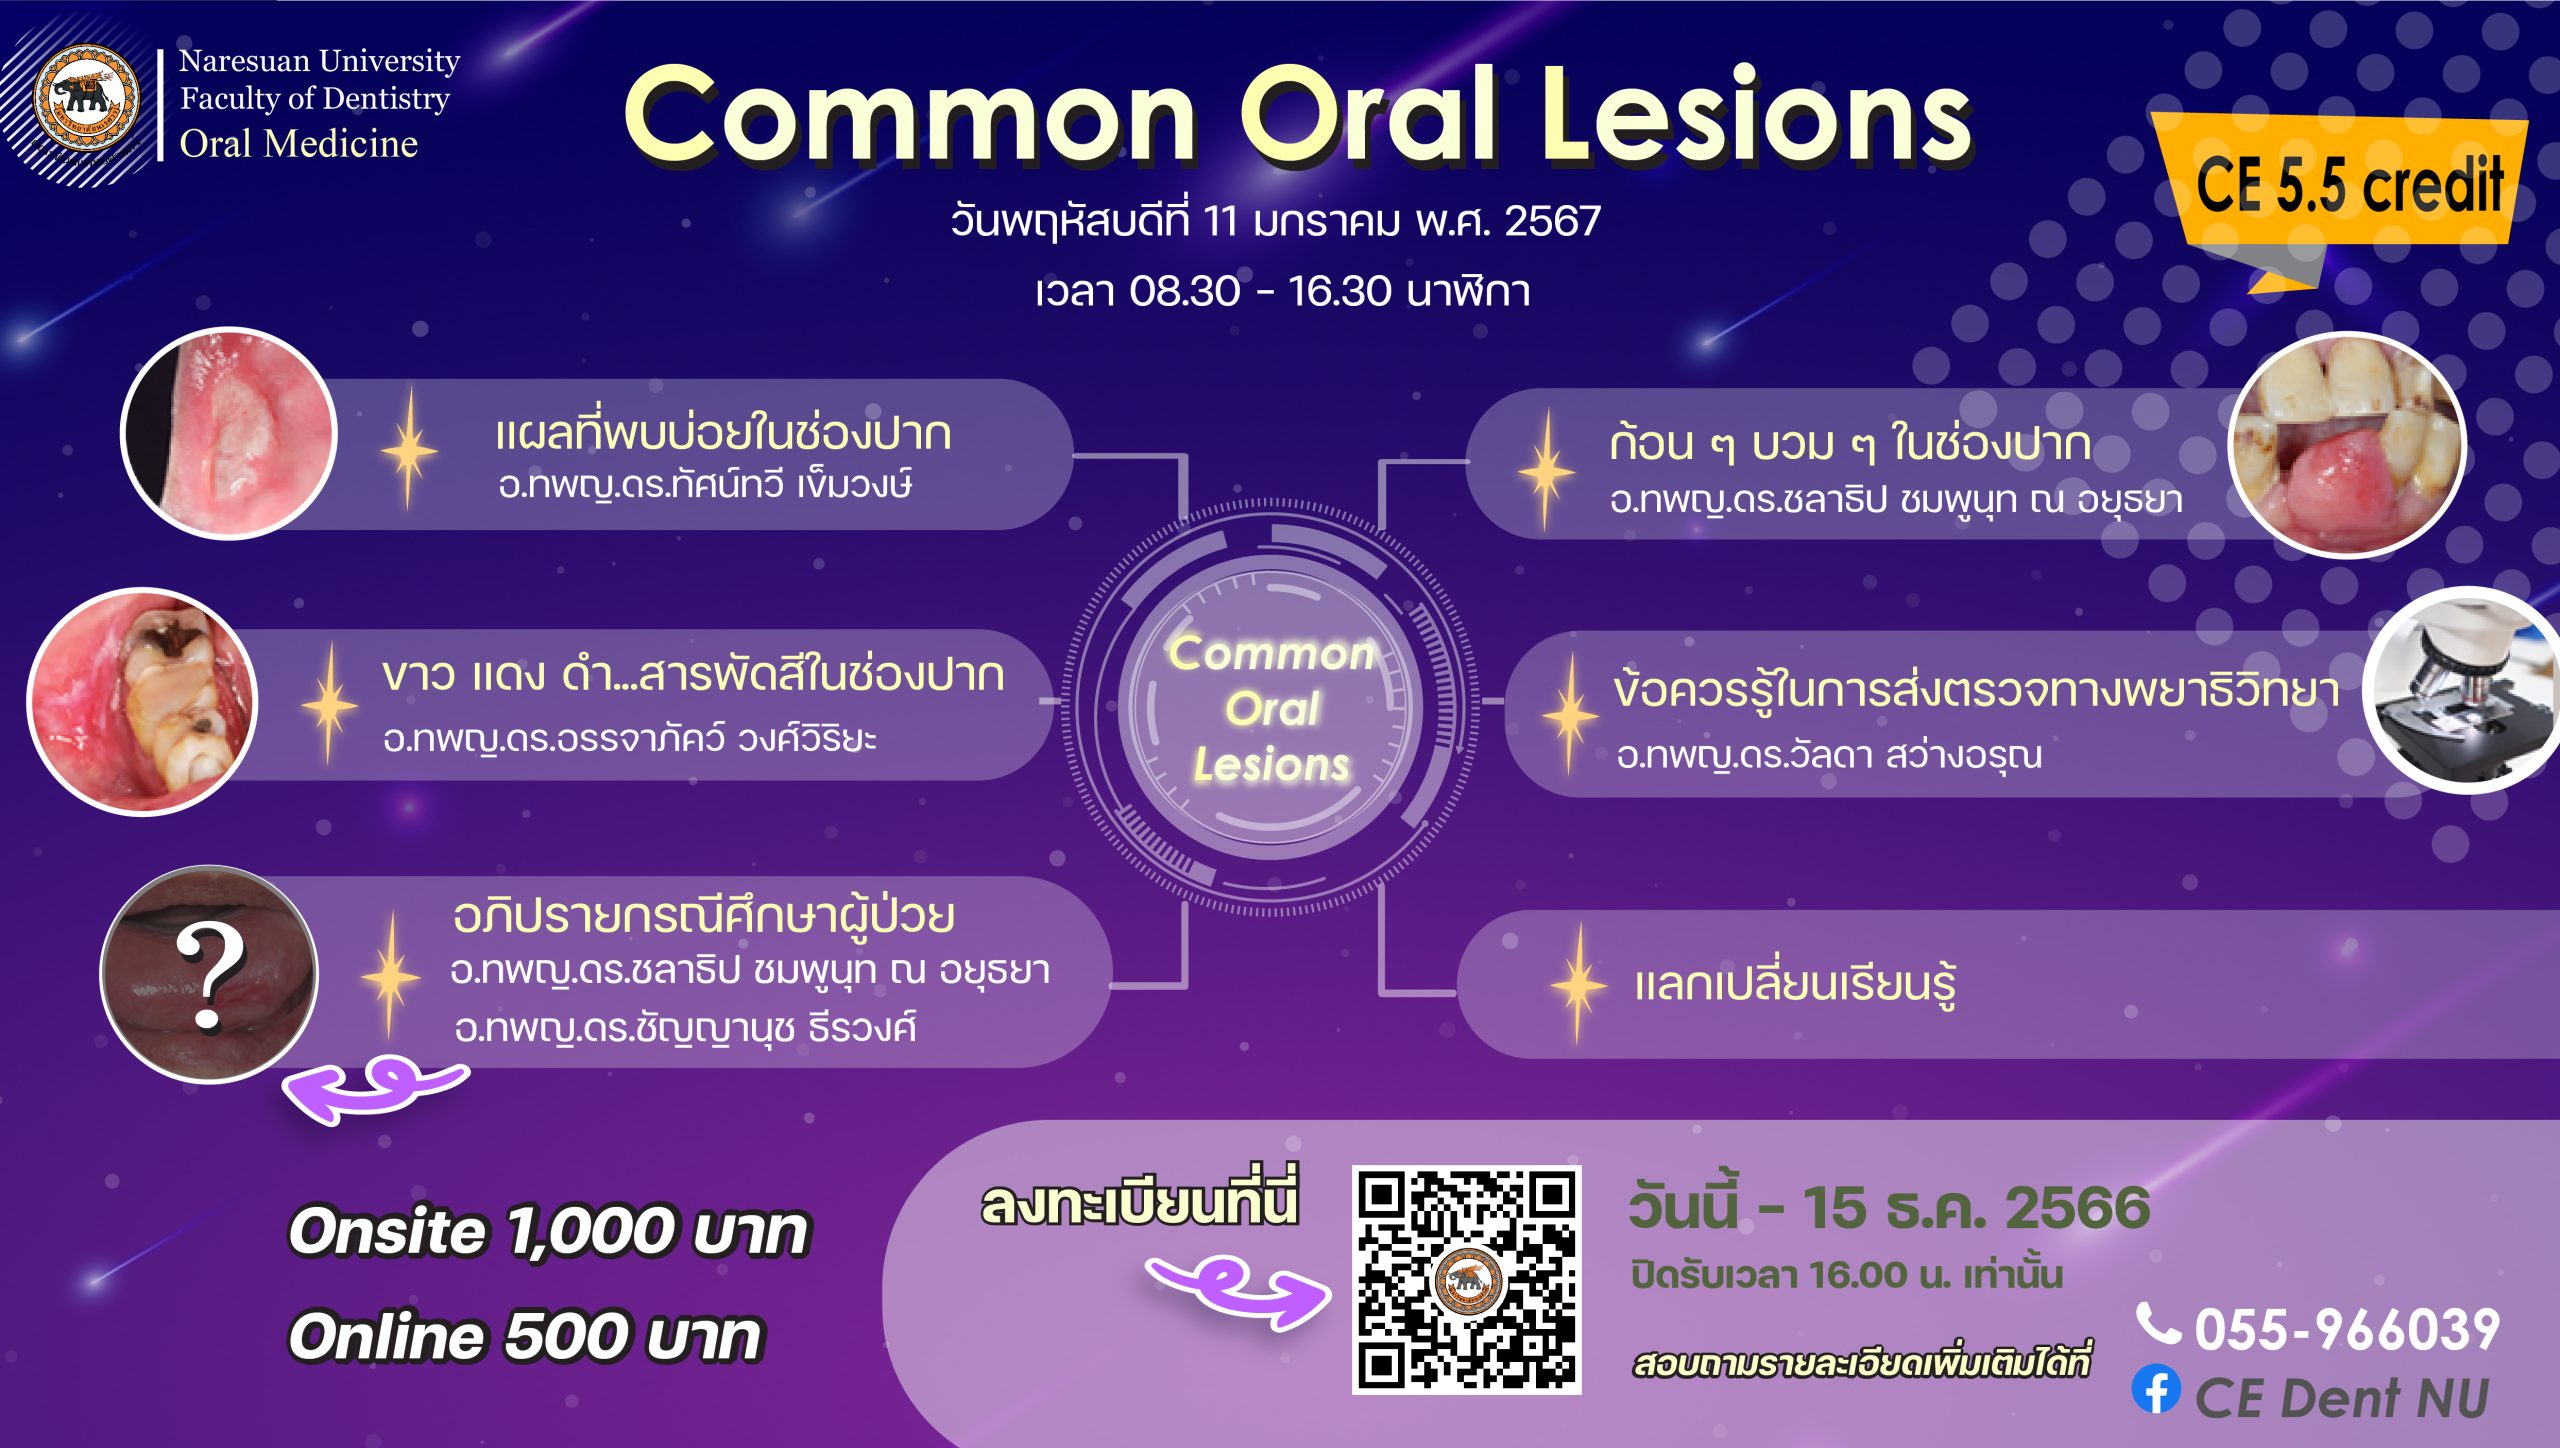 โครงการประชุมเชิงวิชาการ เรื่อง “Common Oral Lesions” (สมัครได้ถึง 15 ธ.ค. 66 เวลา 16:00 น.)